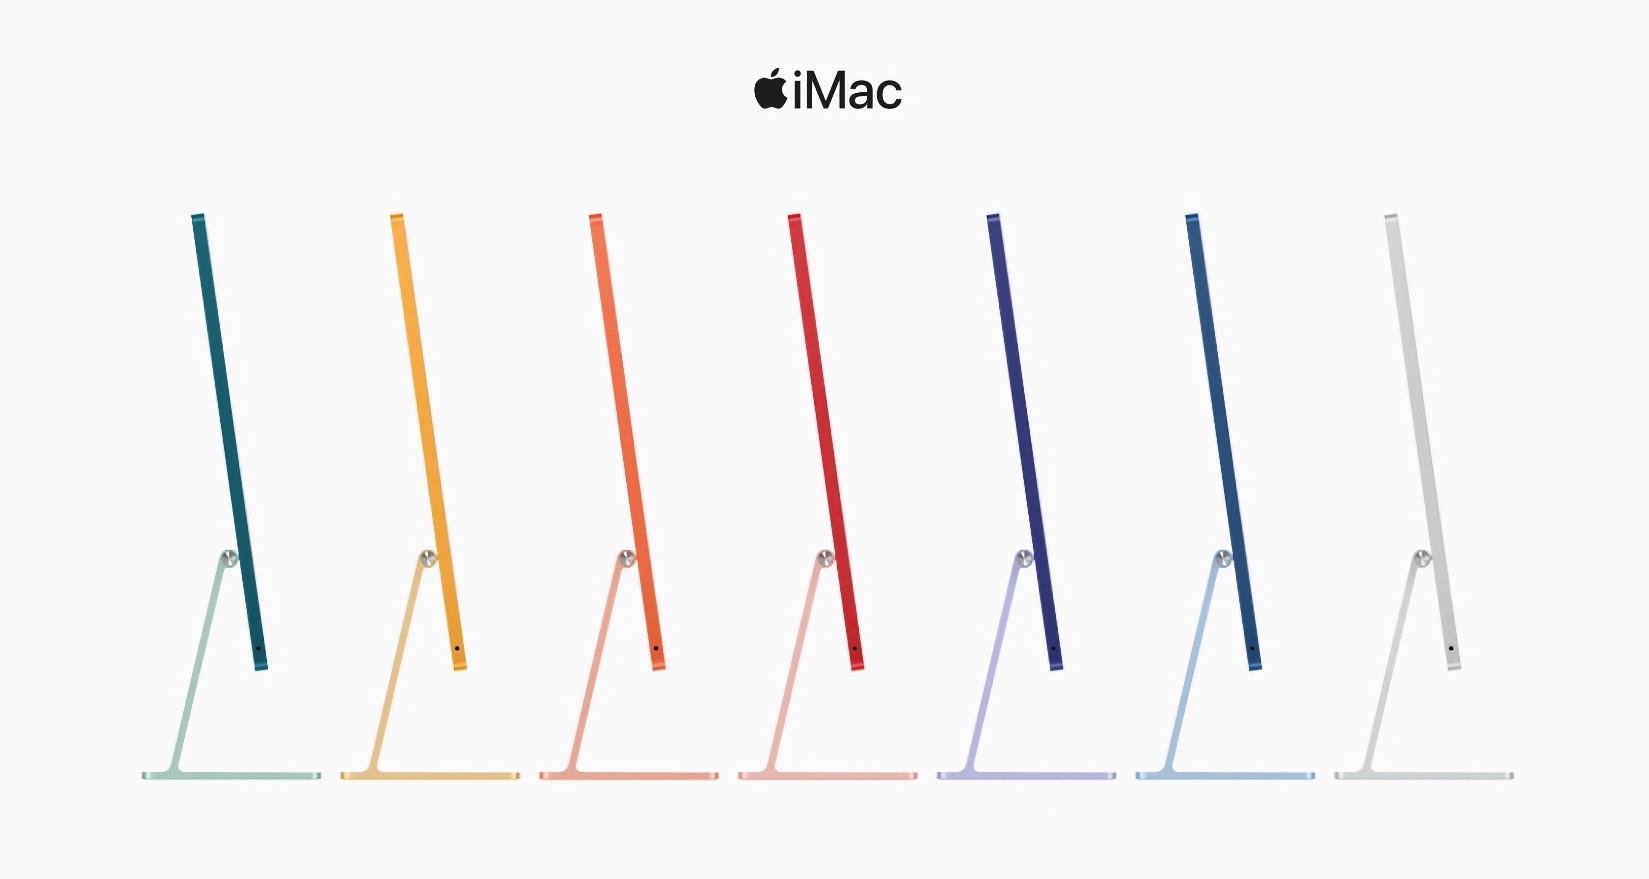 El iMac con chip octa-core M1 y pantalla Retina está a la venta en Amazon con un descuento de 300 dólares